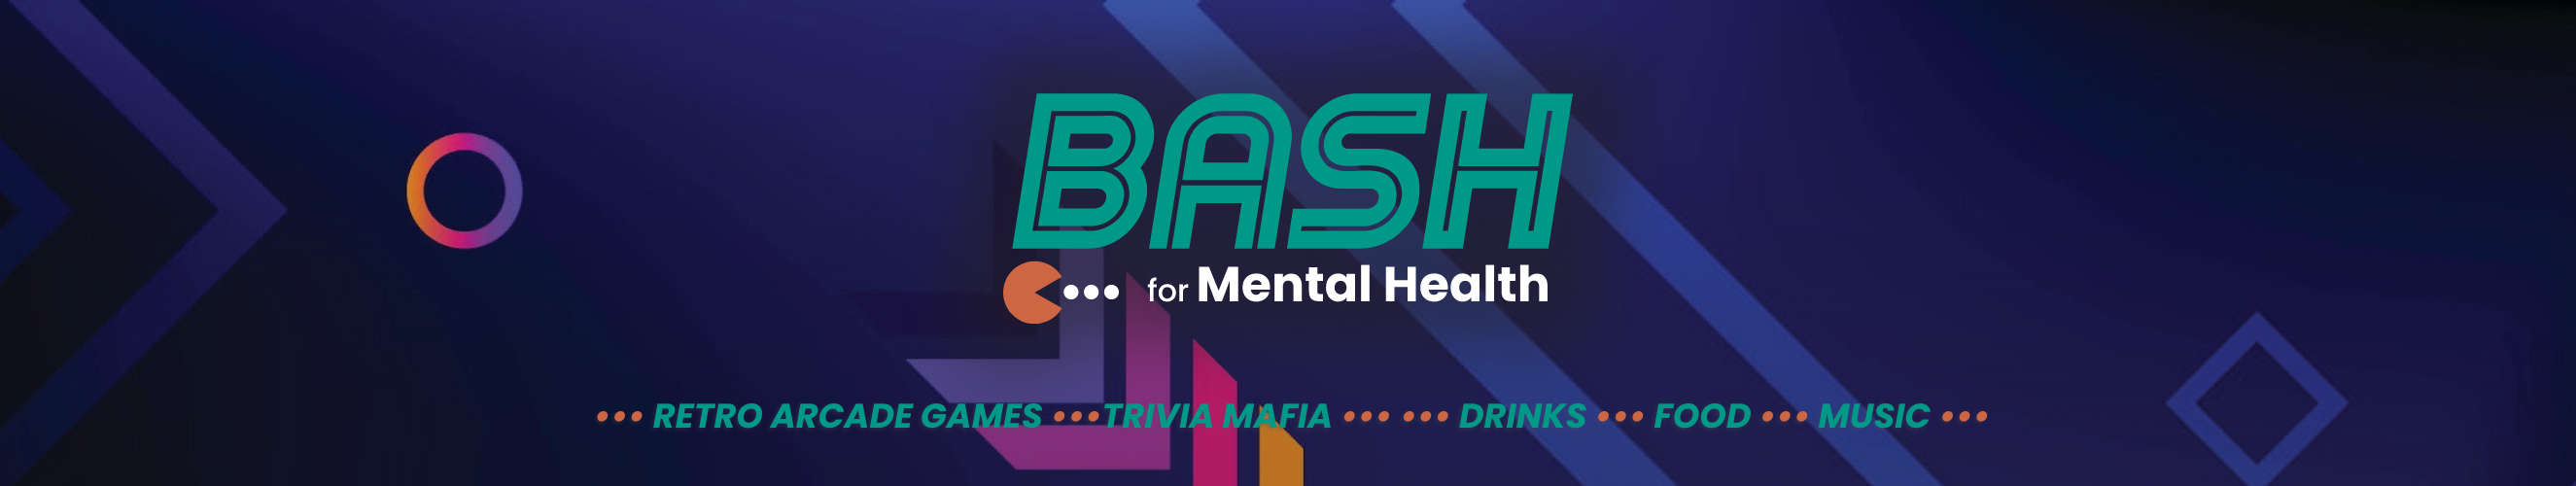 Bash for Mental Health